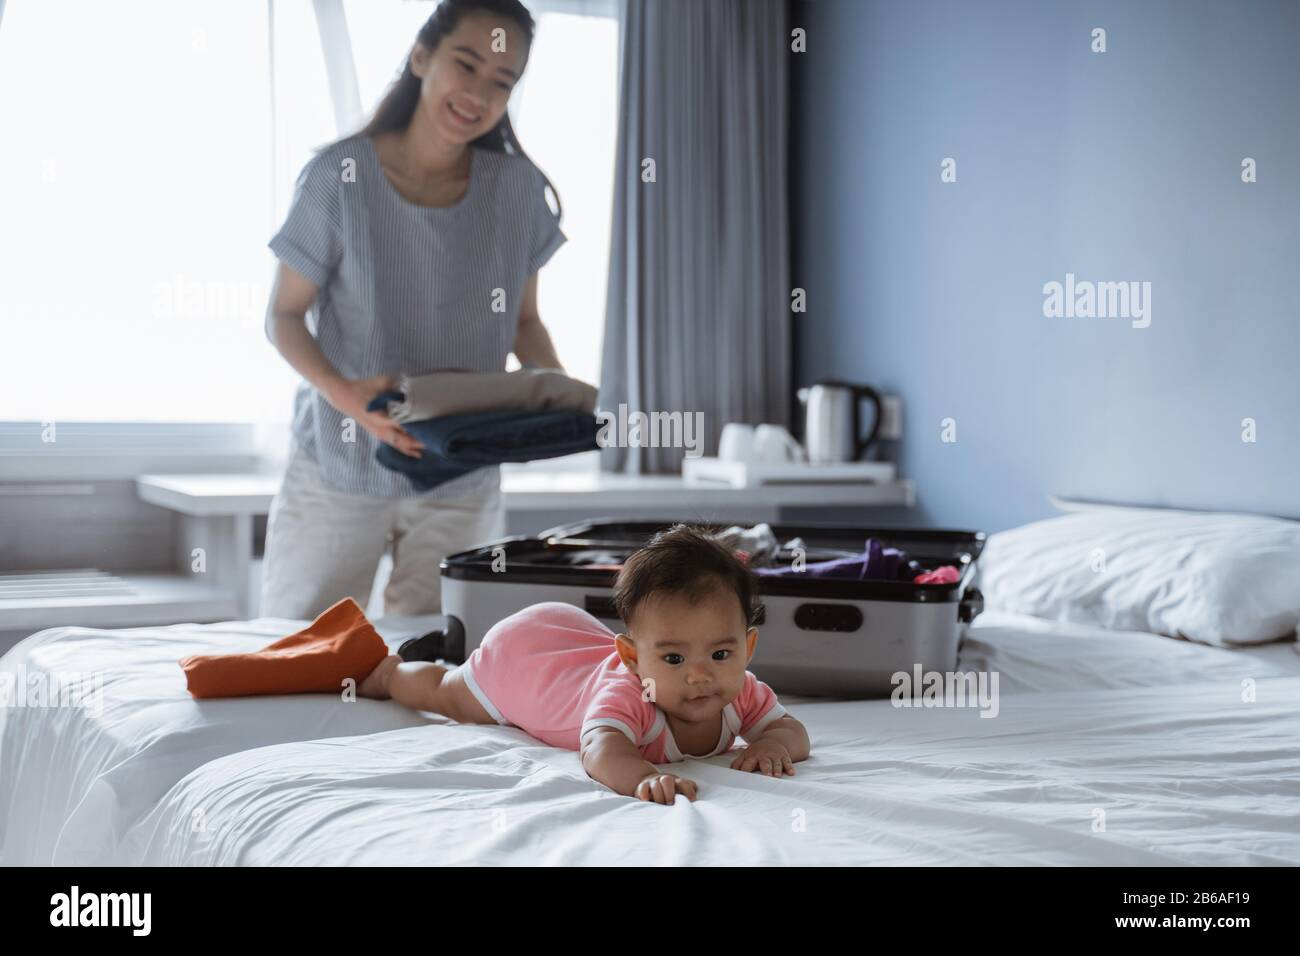 Süßes Baby liegt auf dem Bett, wenn seine Mutter seine Kleidung in einen Koffer legt, bevor sie in den Urlaub geht Stockfoto